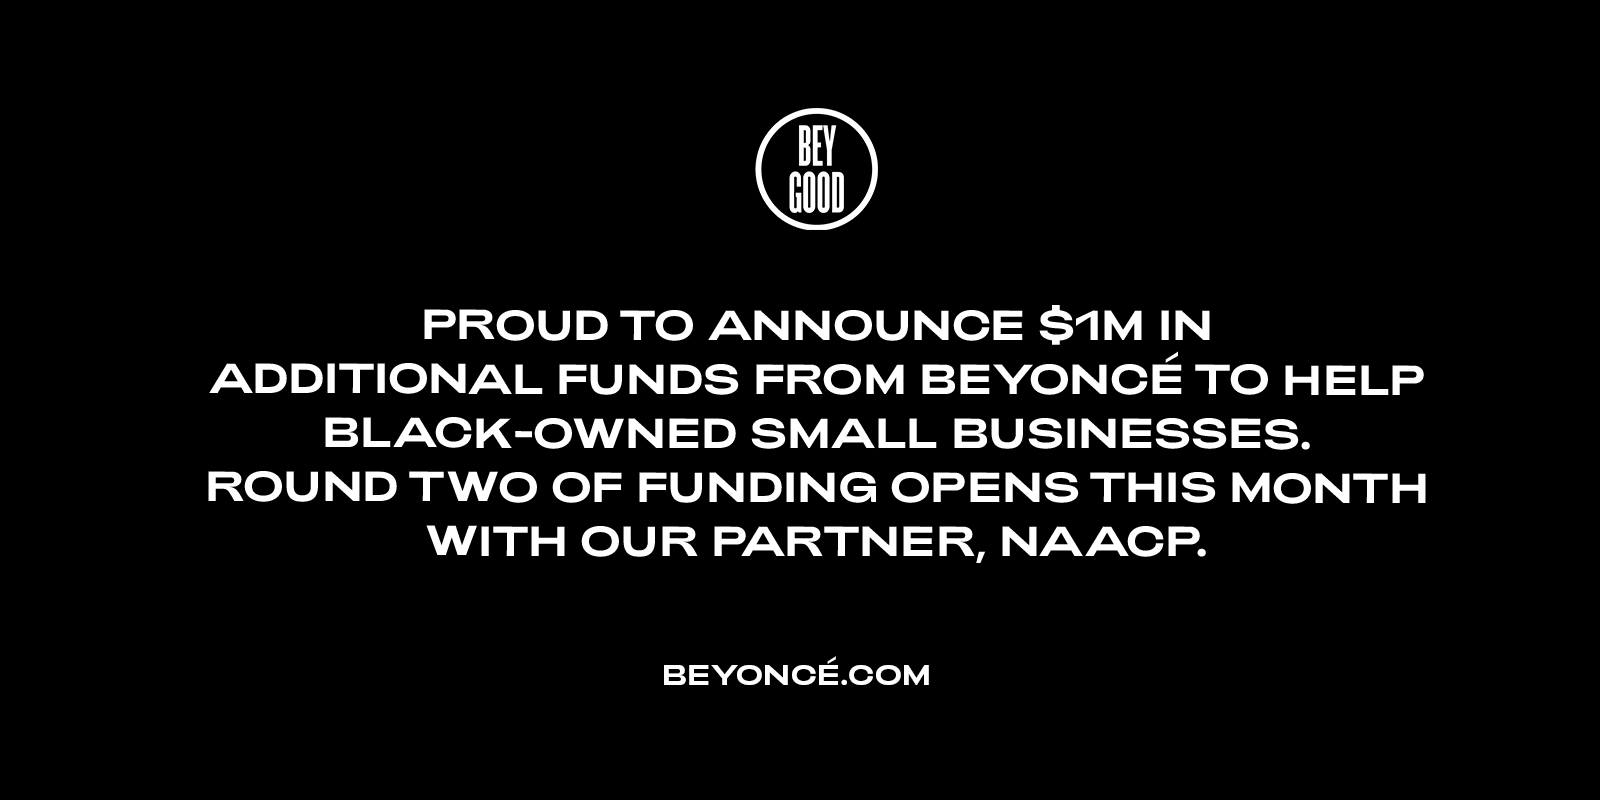 Foto: Reprodução/Beyoncé.com